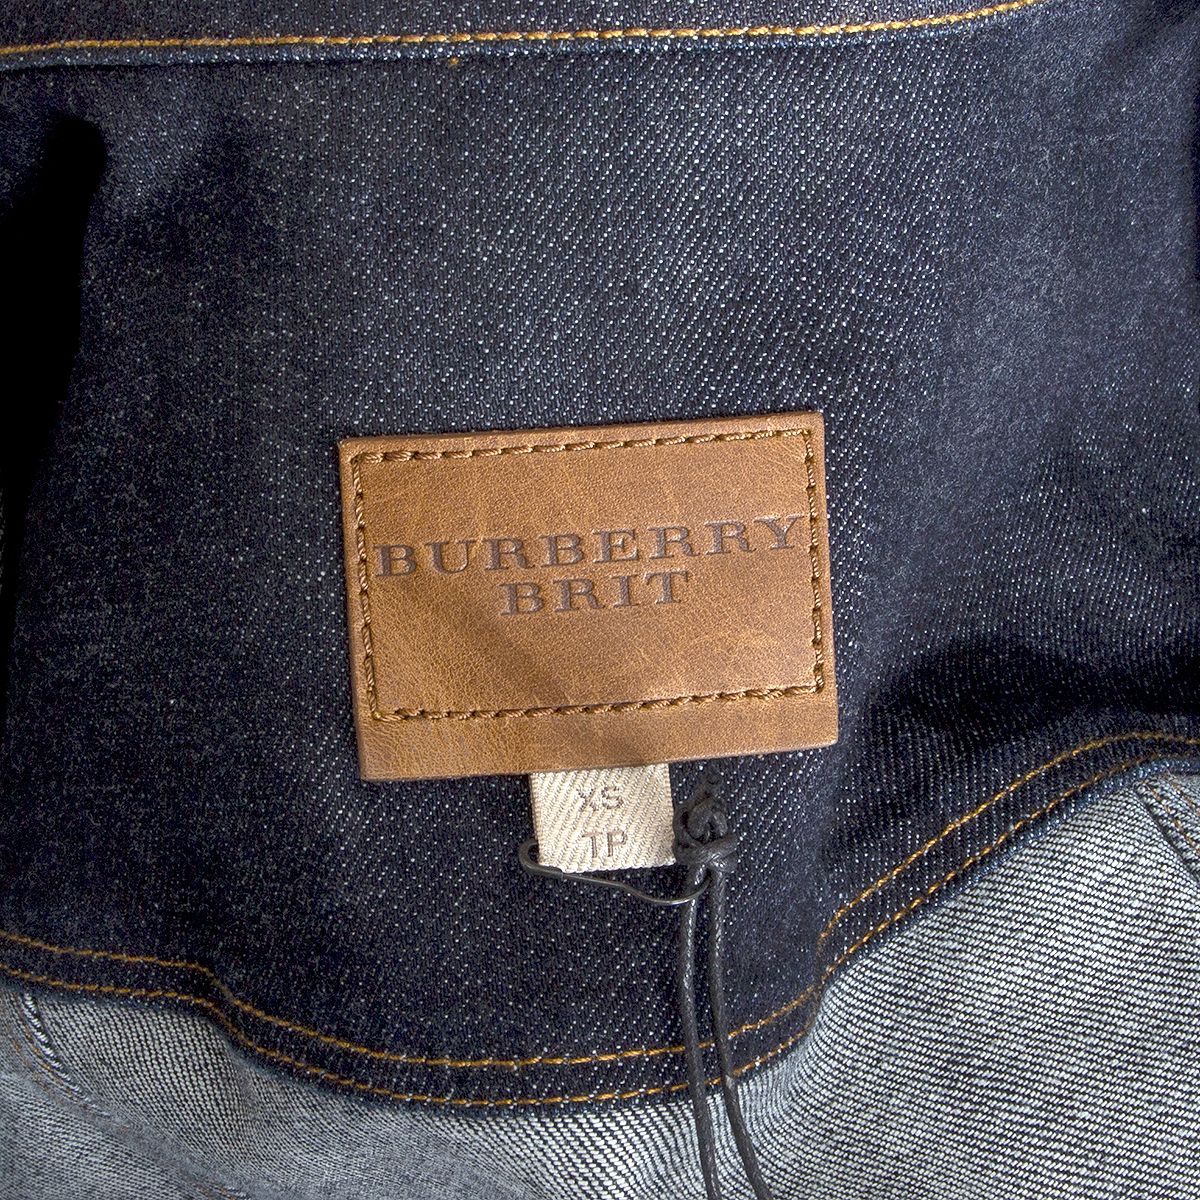 Burberry Brit Denim Jacket Blue Jeans